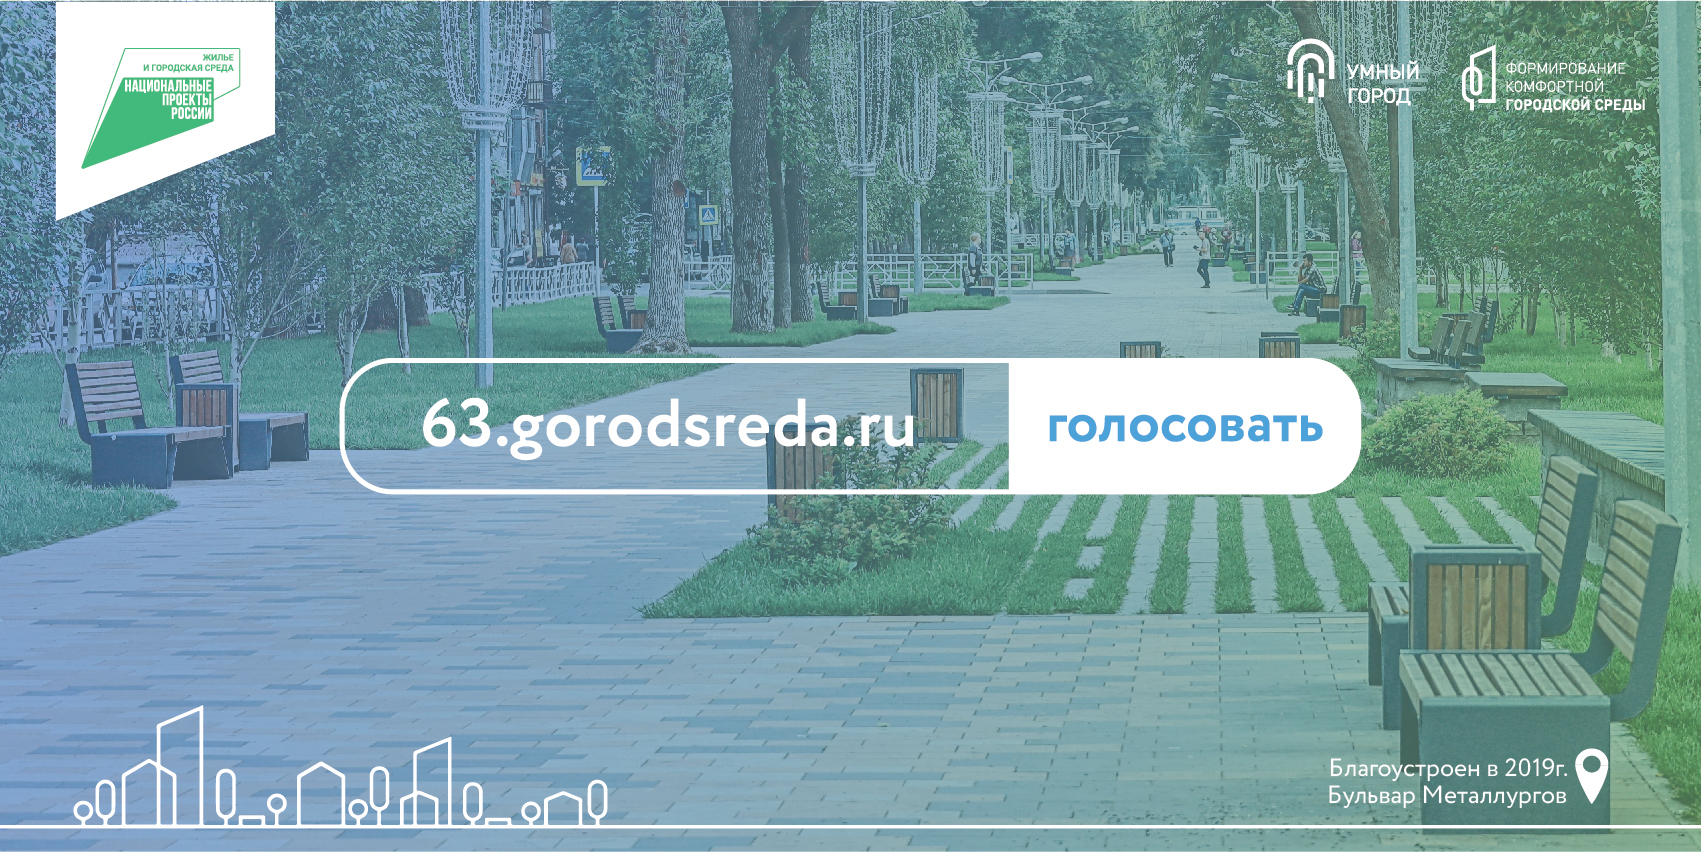 29 gorodsreda ru проголосовать